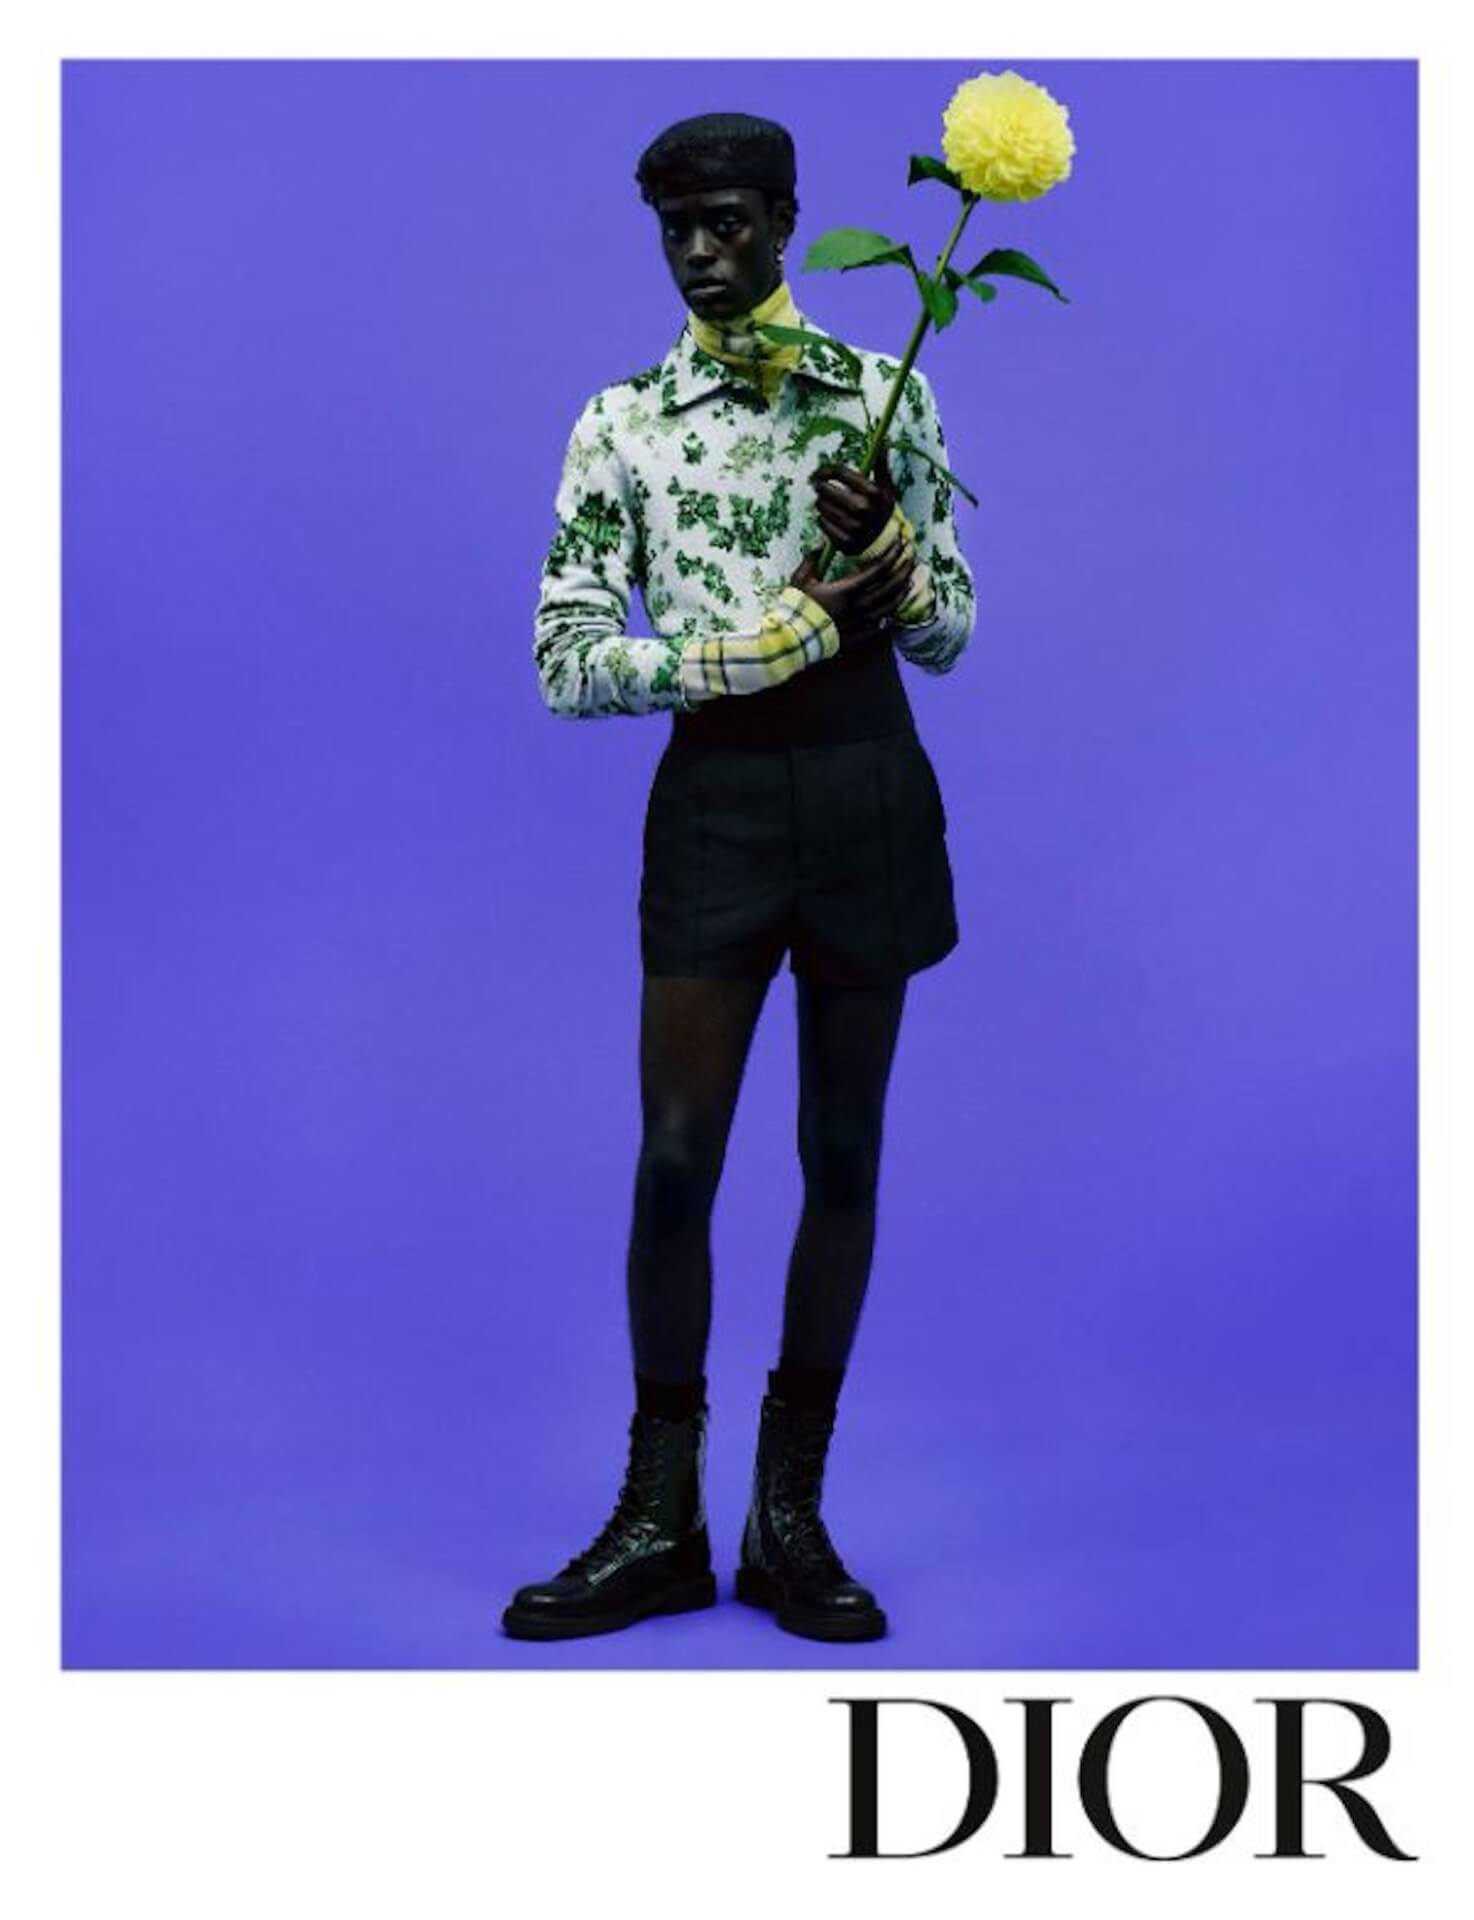 ディオールがキム・ジョーンズによるサマー 2021 メンズコレクションの広告キャンペーンを公開 fashion210209_dior_summer21mens_3